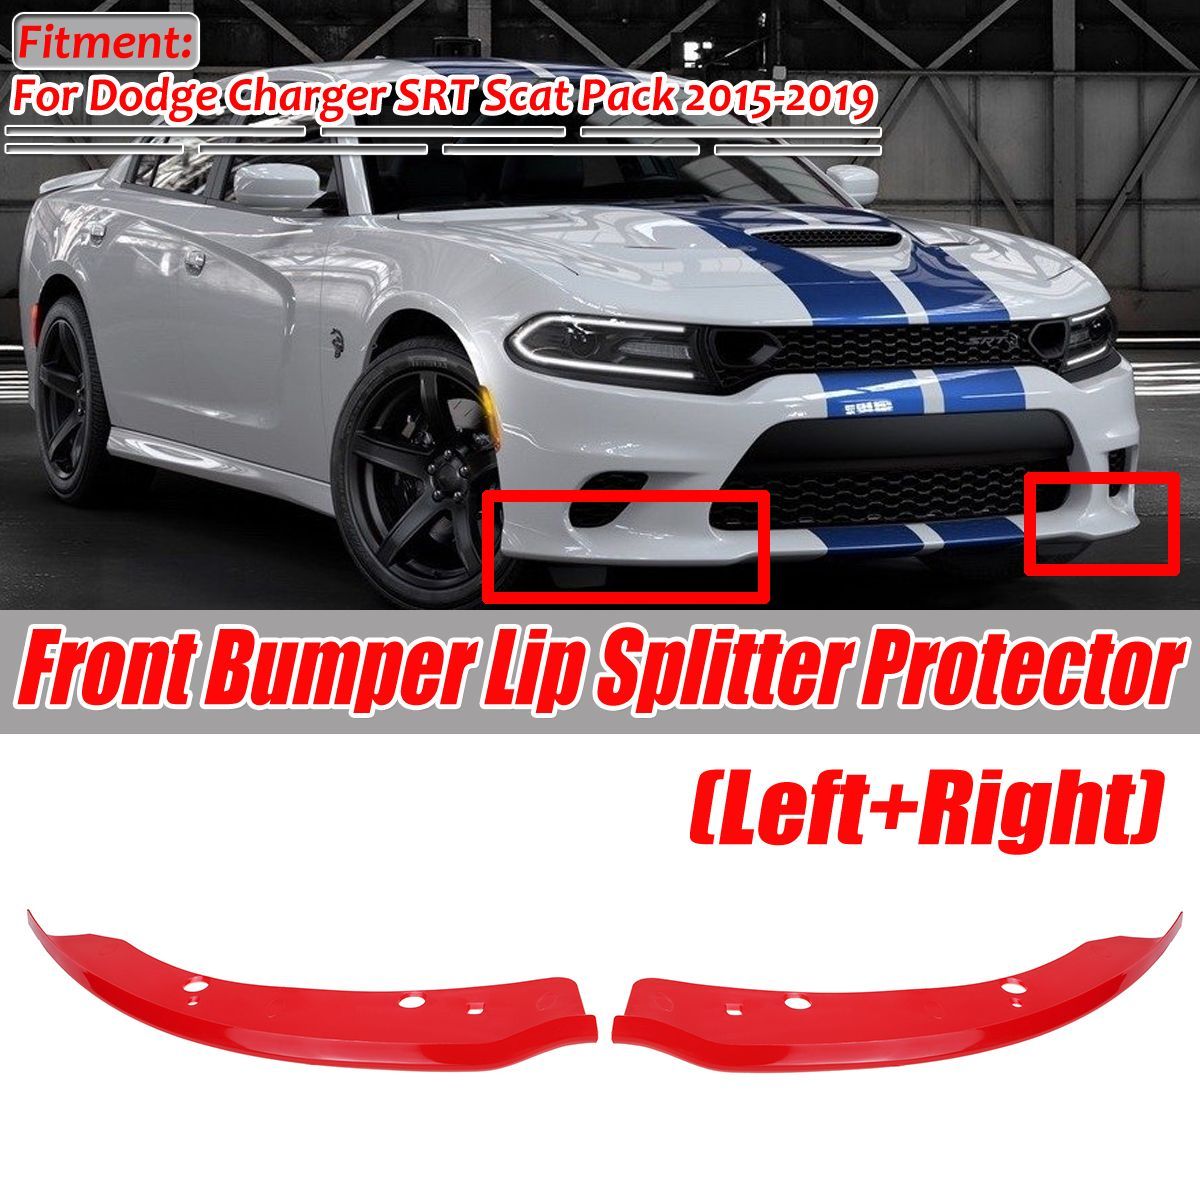 Front-Bumper-Lip-Splitter-Protector-Red-For-Dodge-Charger-SRT-Scat-Pack-2015-2019-1684877